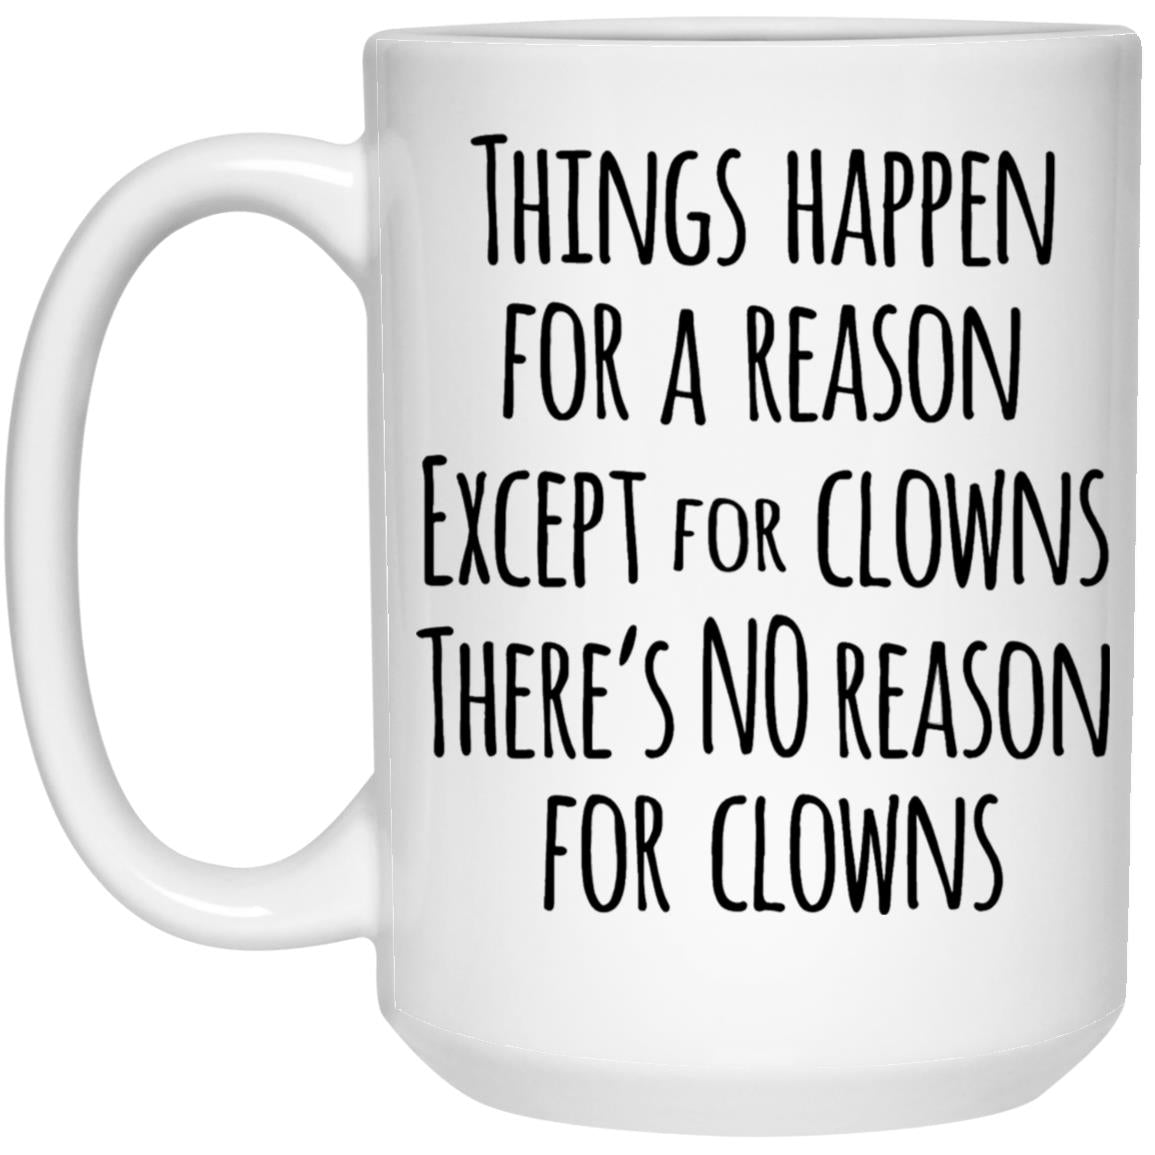 There's No Reason for Clowns Mug